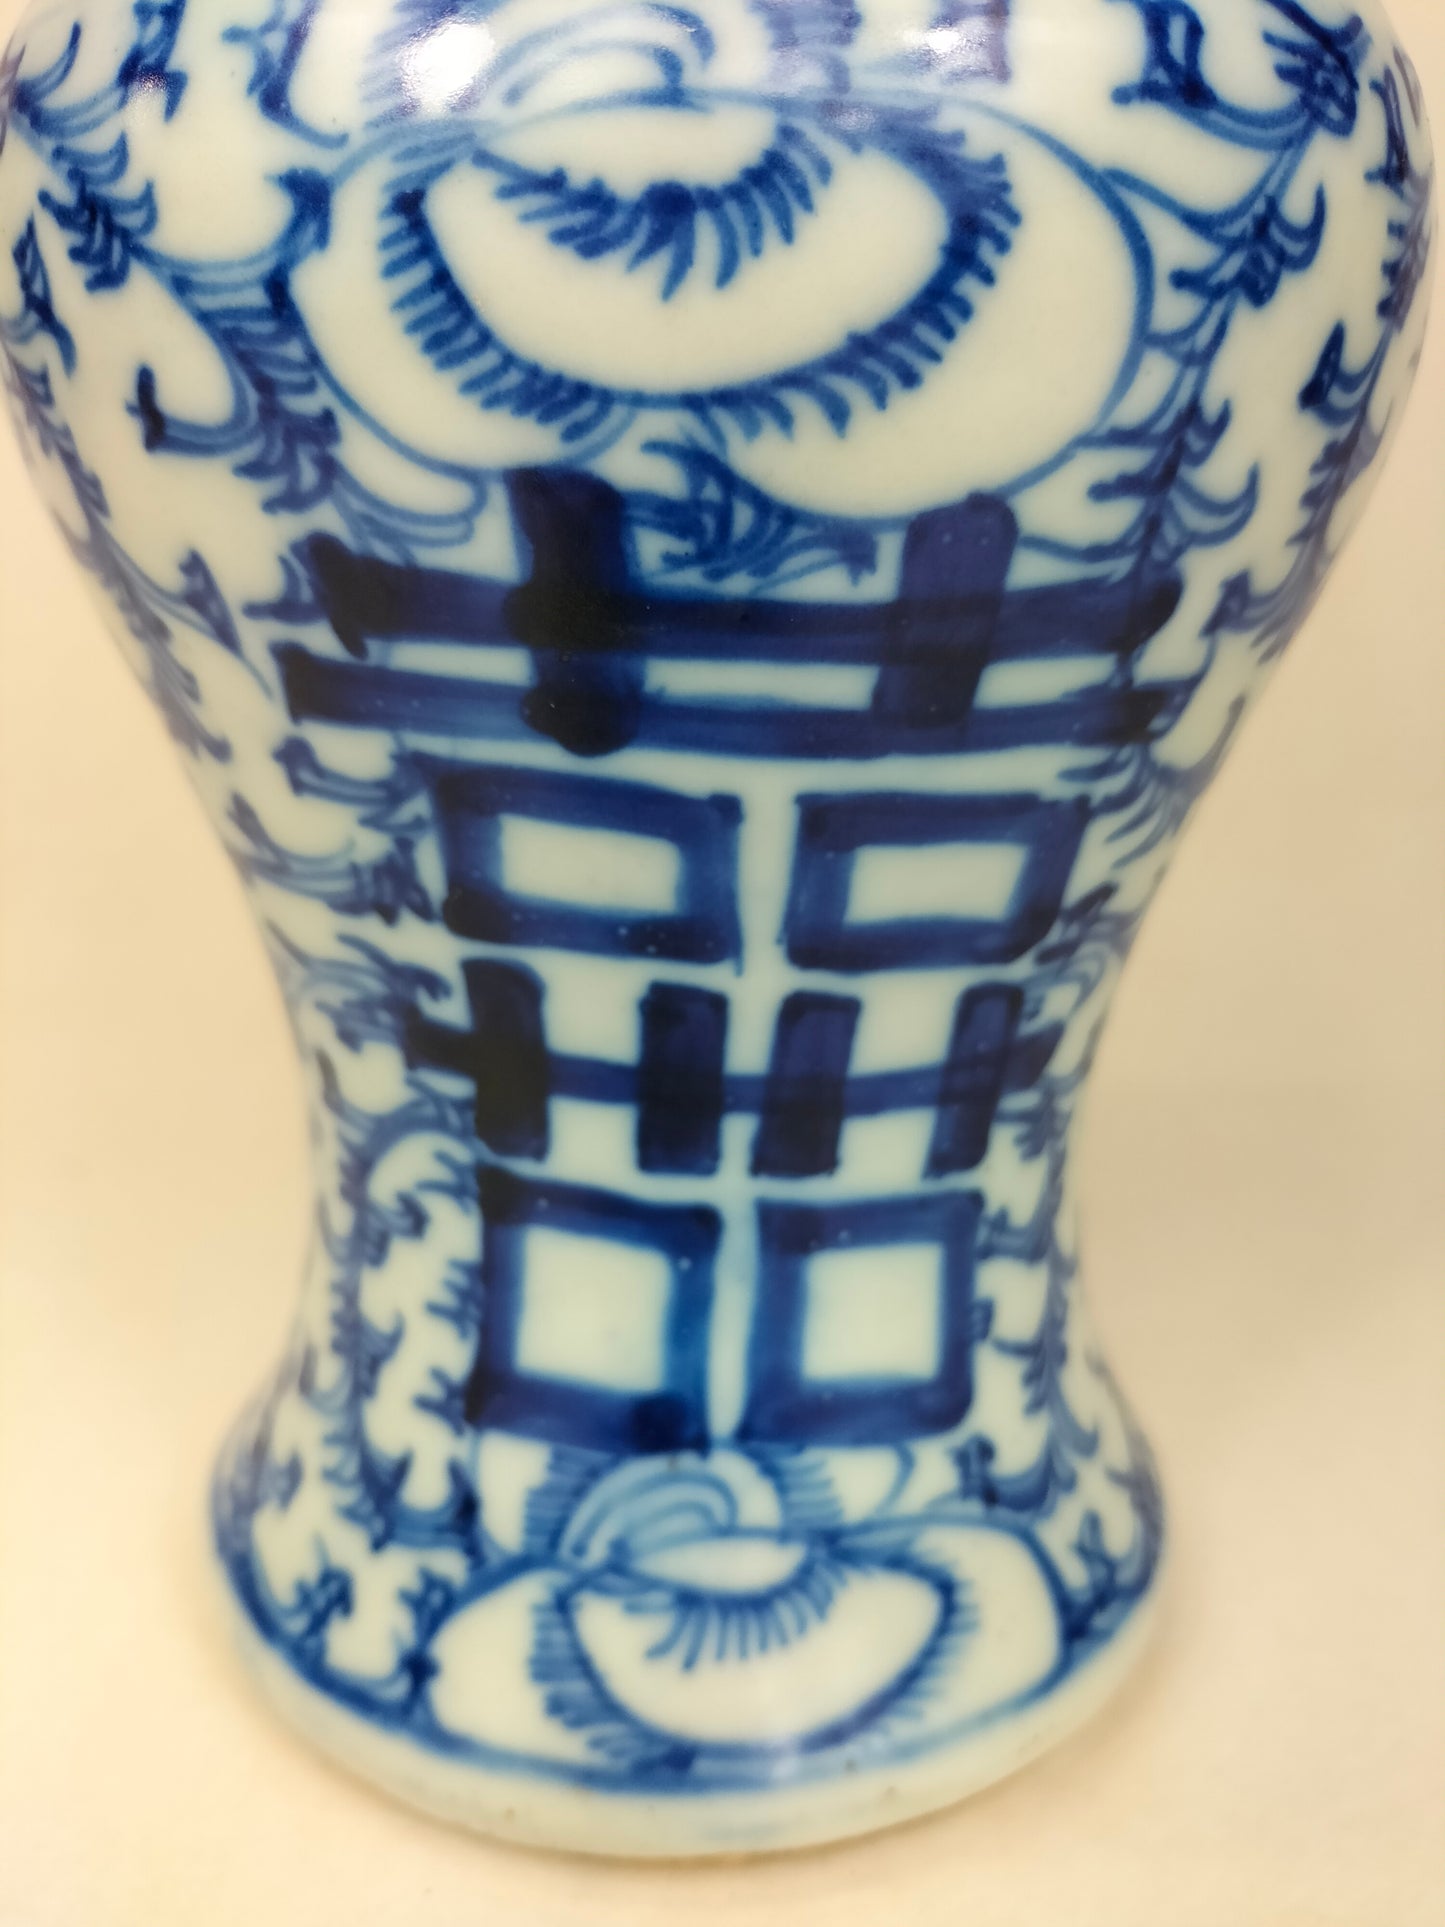 中国古董双喜 yen yen 花瓶 // 清朝 - 19 世纪